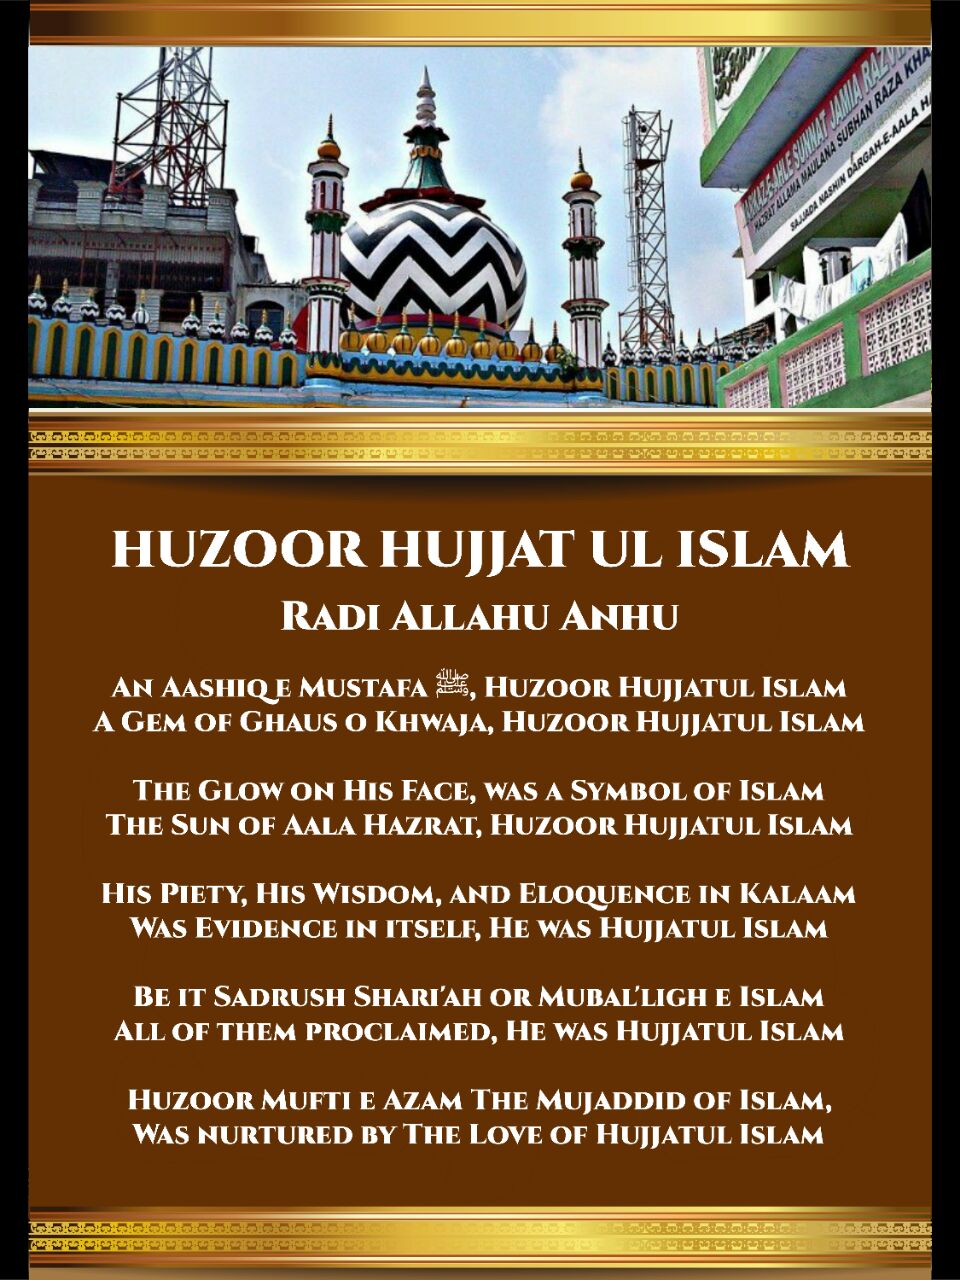 gallery huzoor hujjatul islam part 1